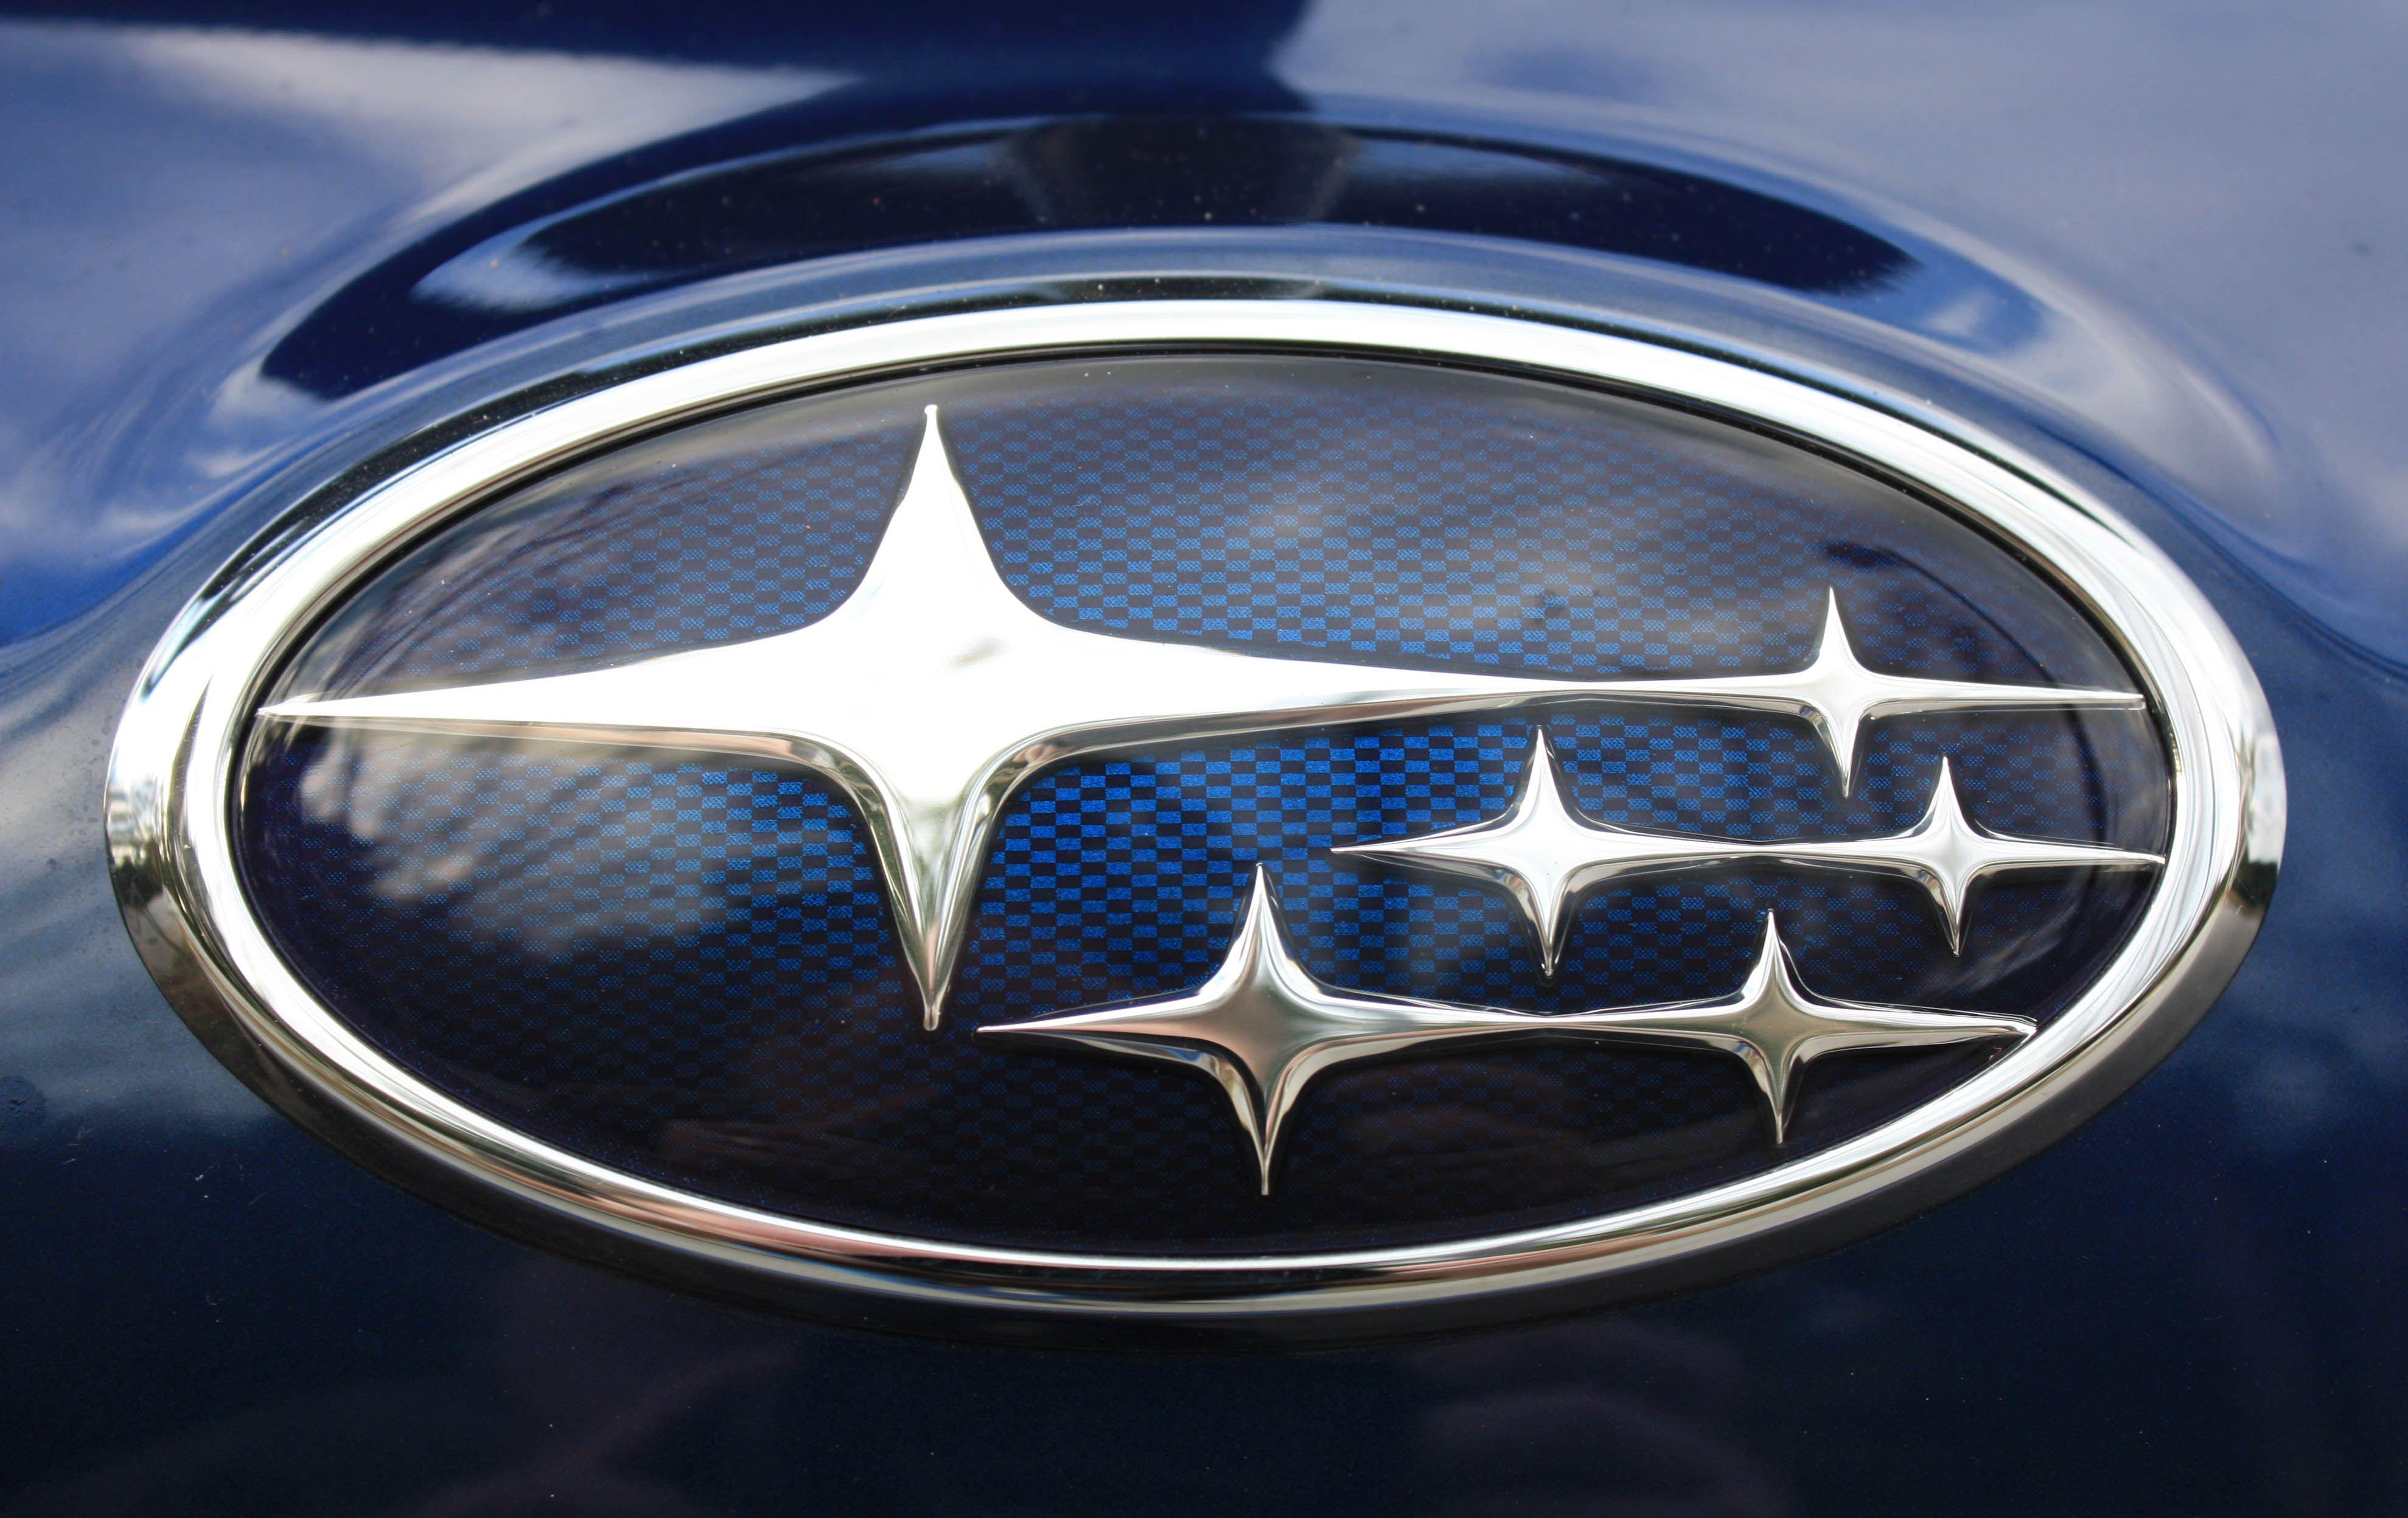 Blue Car Brands Logo - Subaru Logo, Subaru Car Symbol Meaning and History | Car Brand Names.com